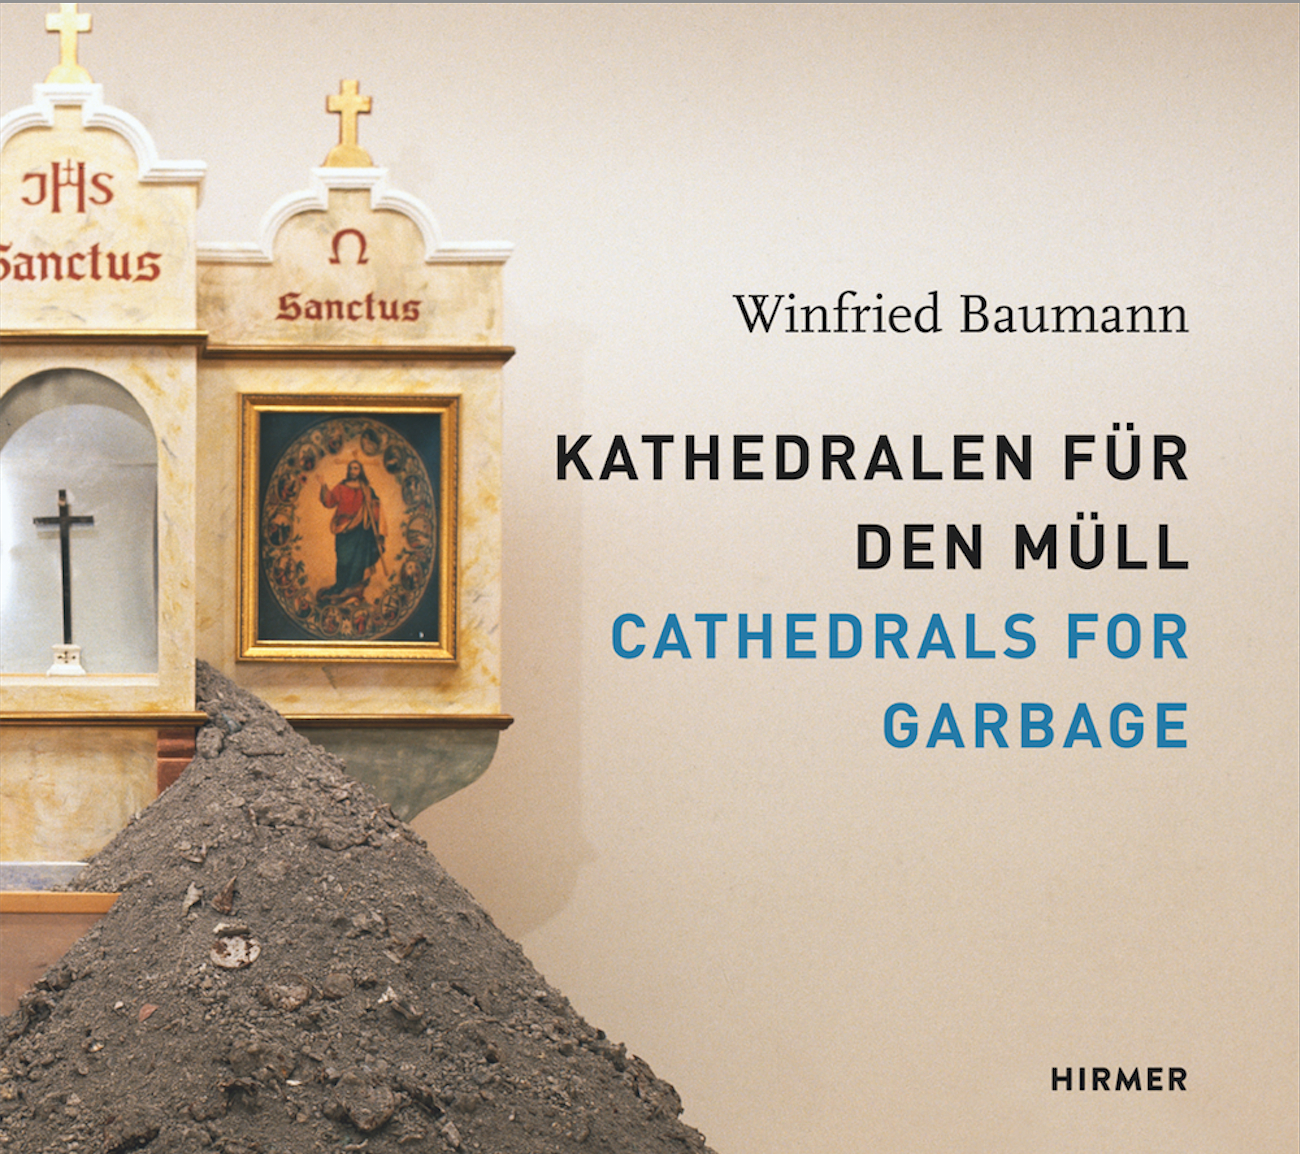 Winfried Baumann: Kathedralen für den Müll, Bild: München: Hirmer, 2016.